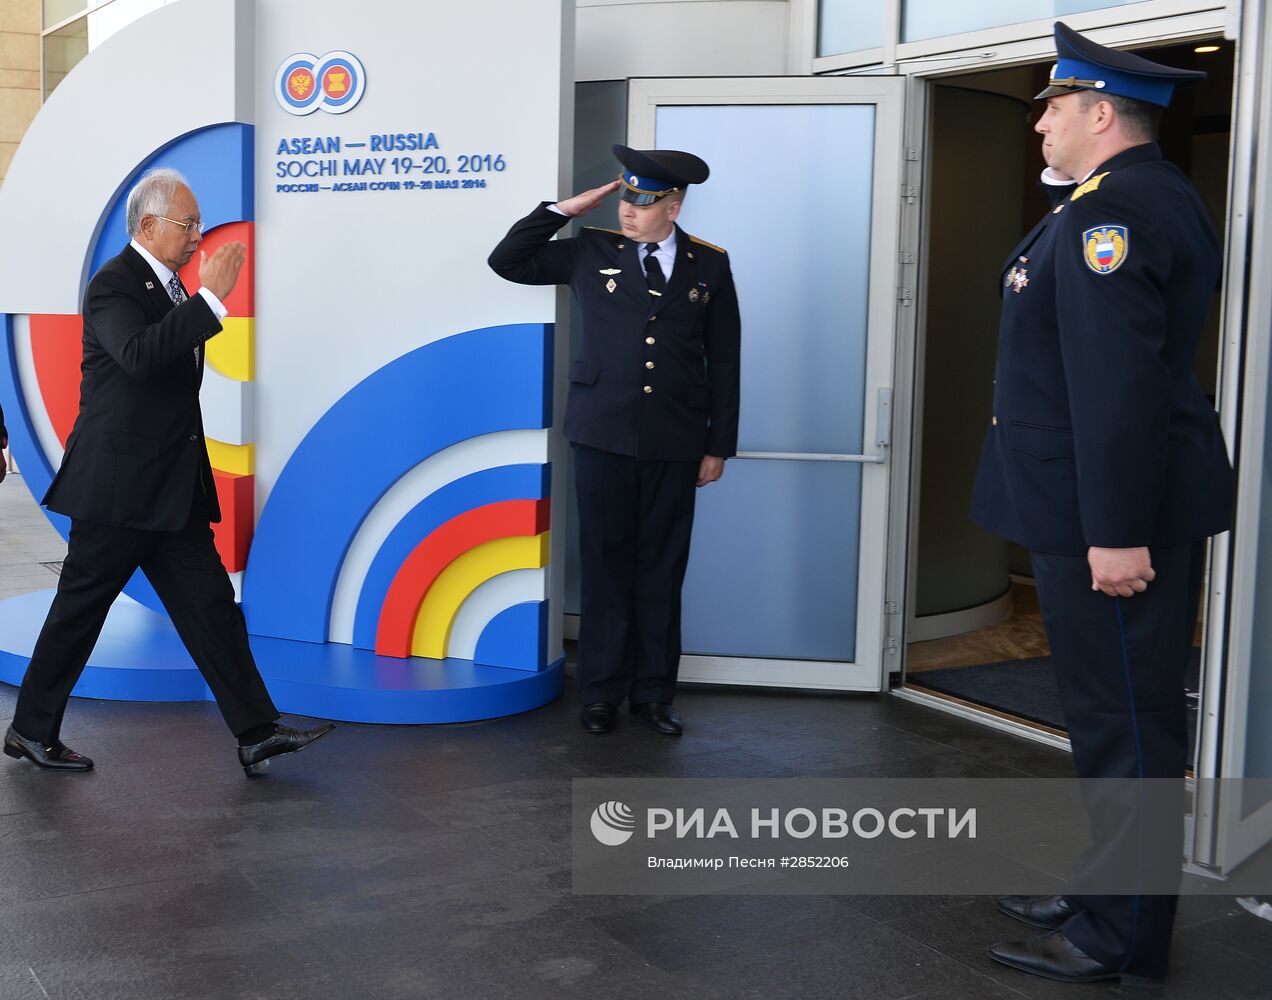 Прибытие глав делегаций - участников саммита Россия — АСЕАН к конгресс-центру в Сочи